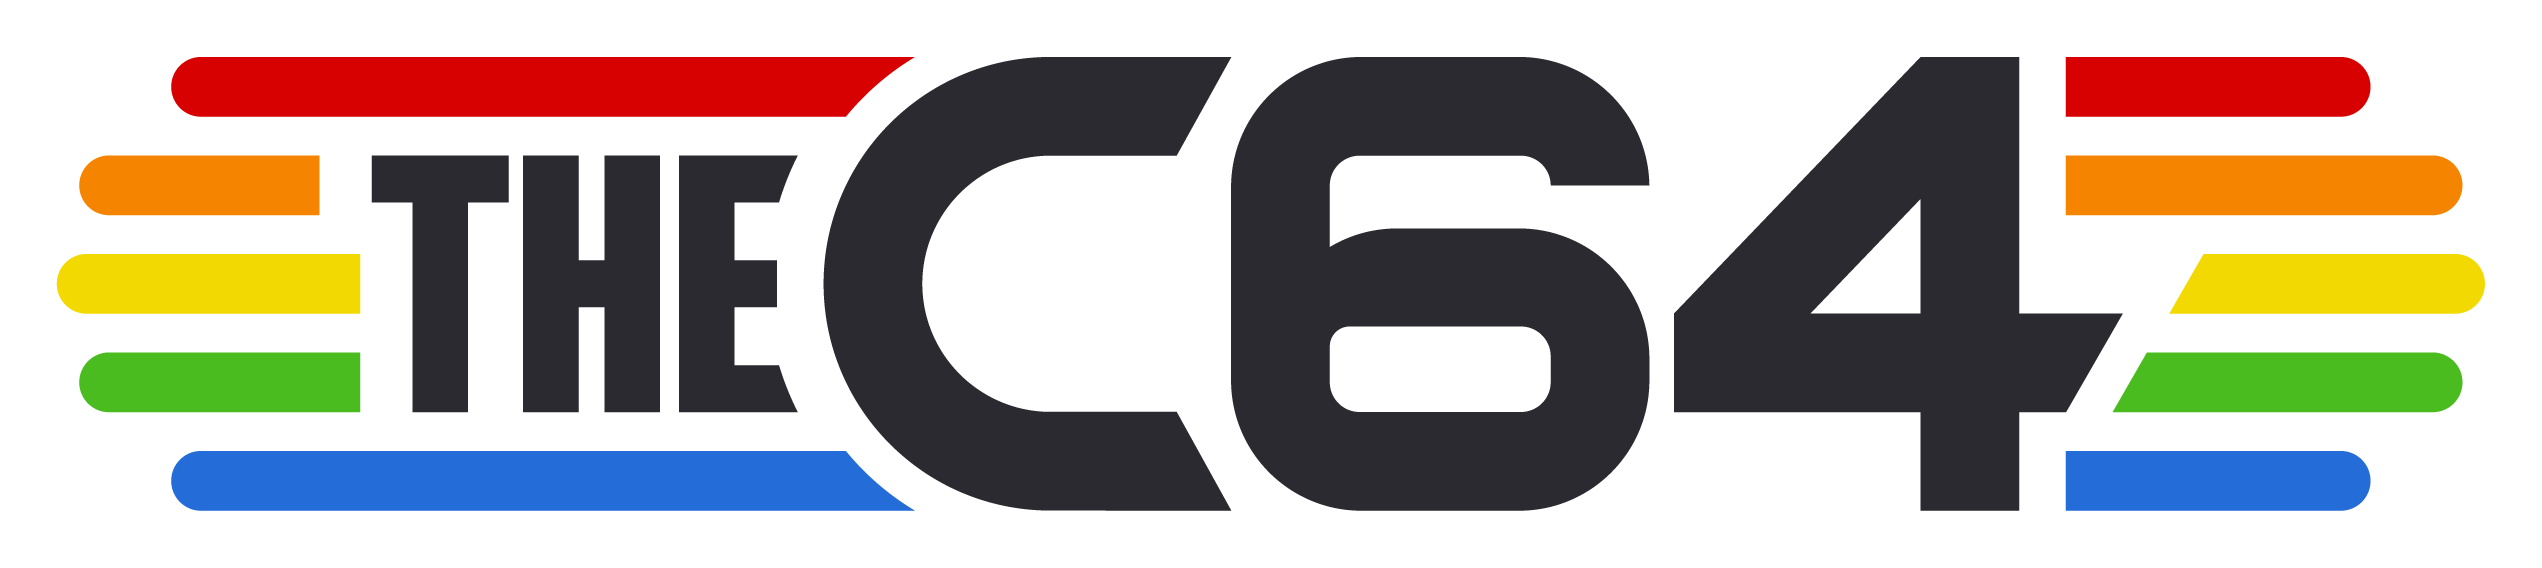 C64 Logo - The C64 - Retro Games